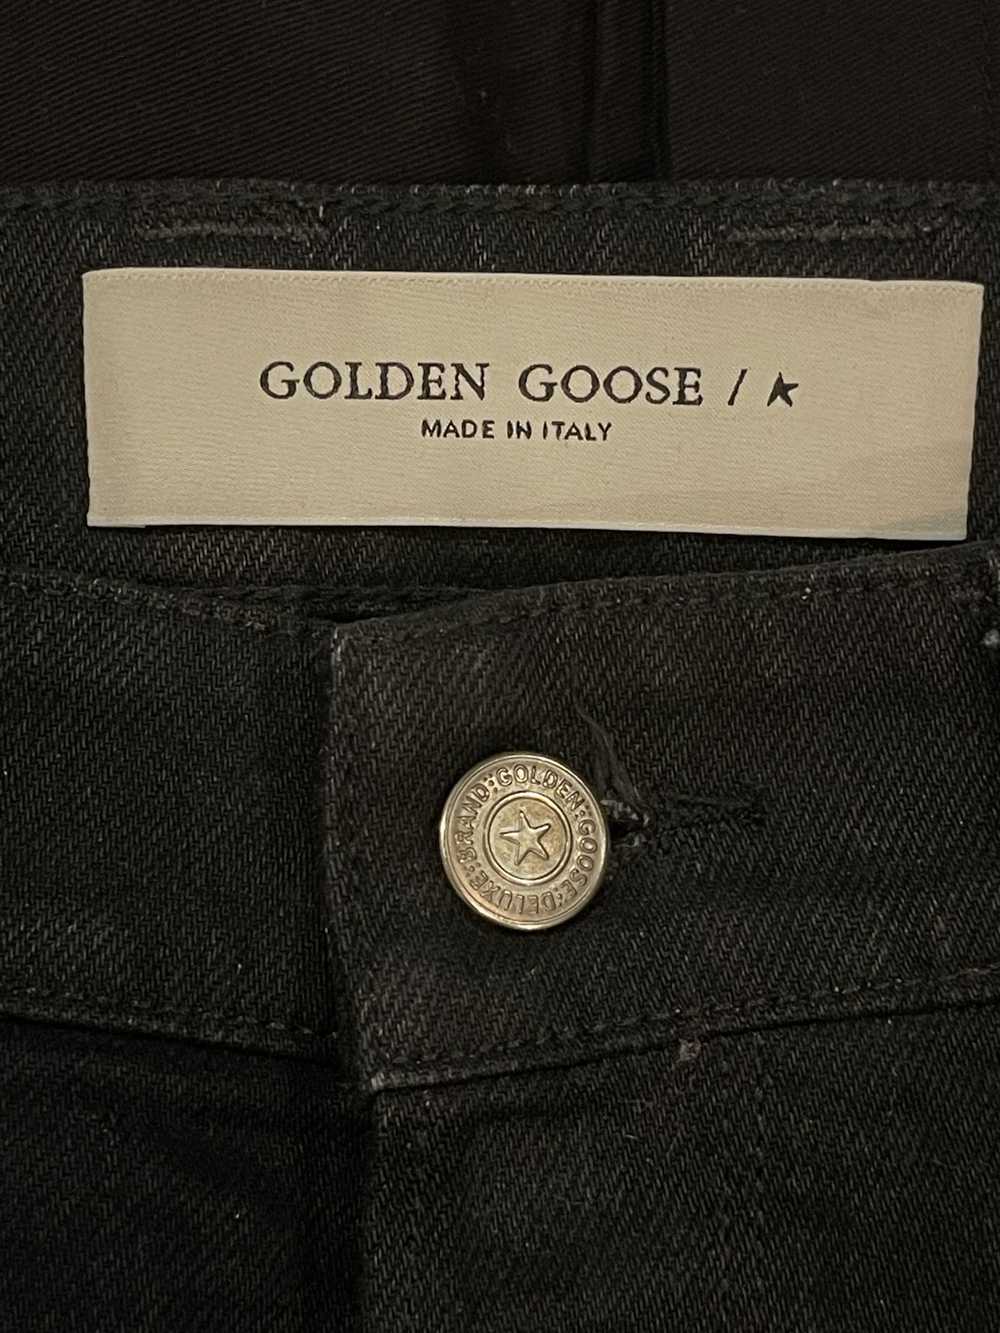 Golden Goose LIT JEANS - image 2